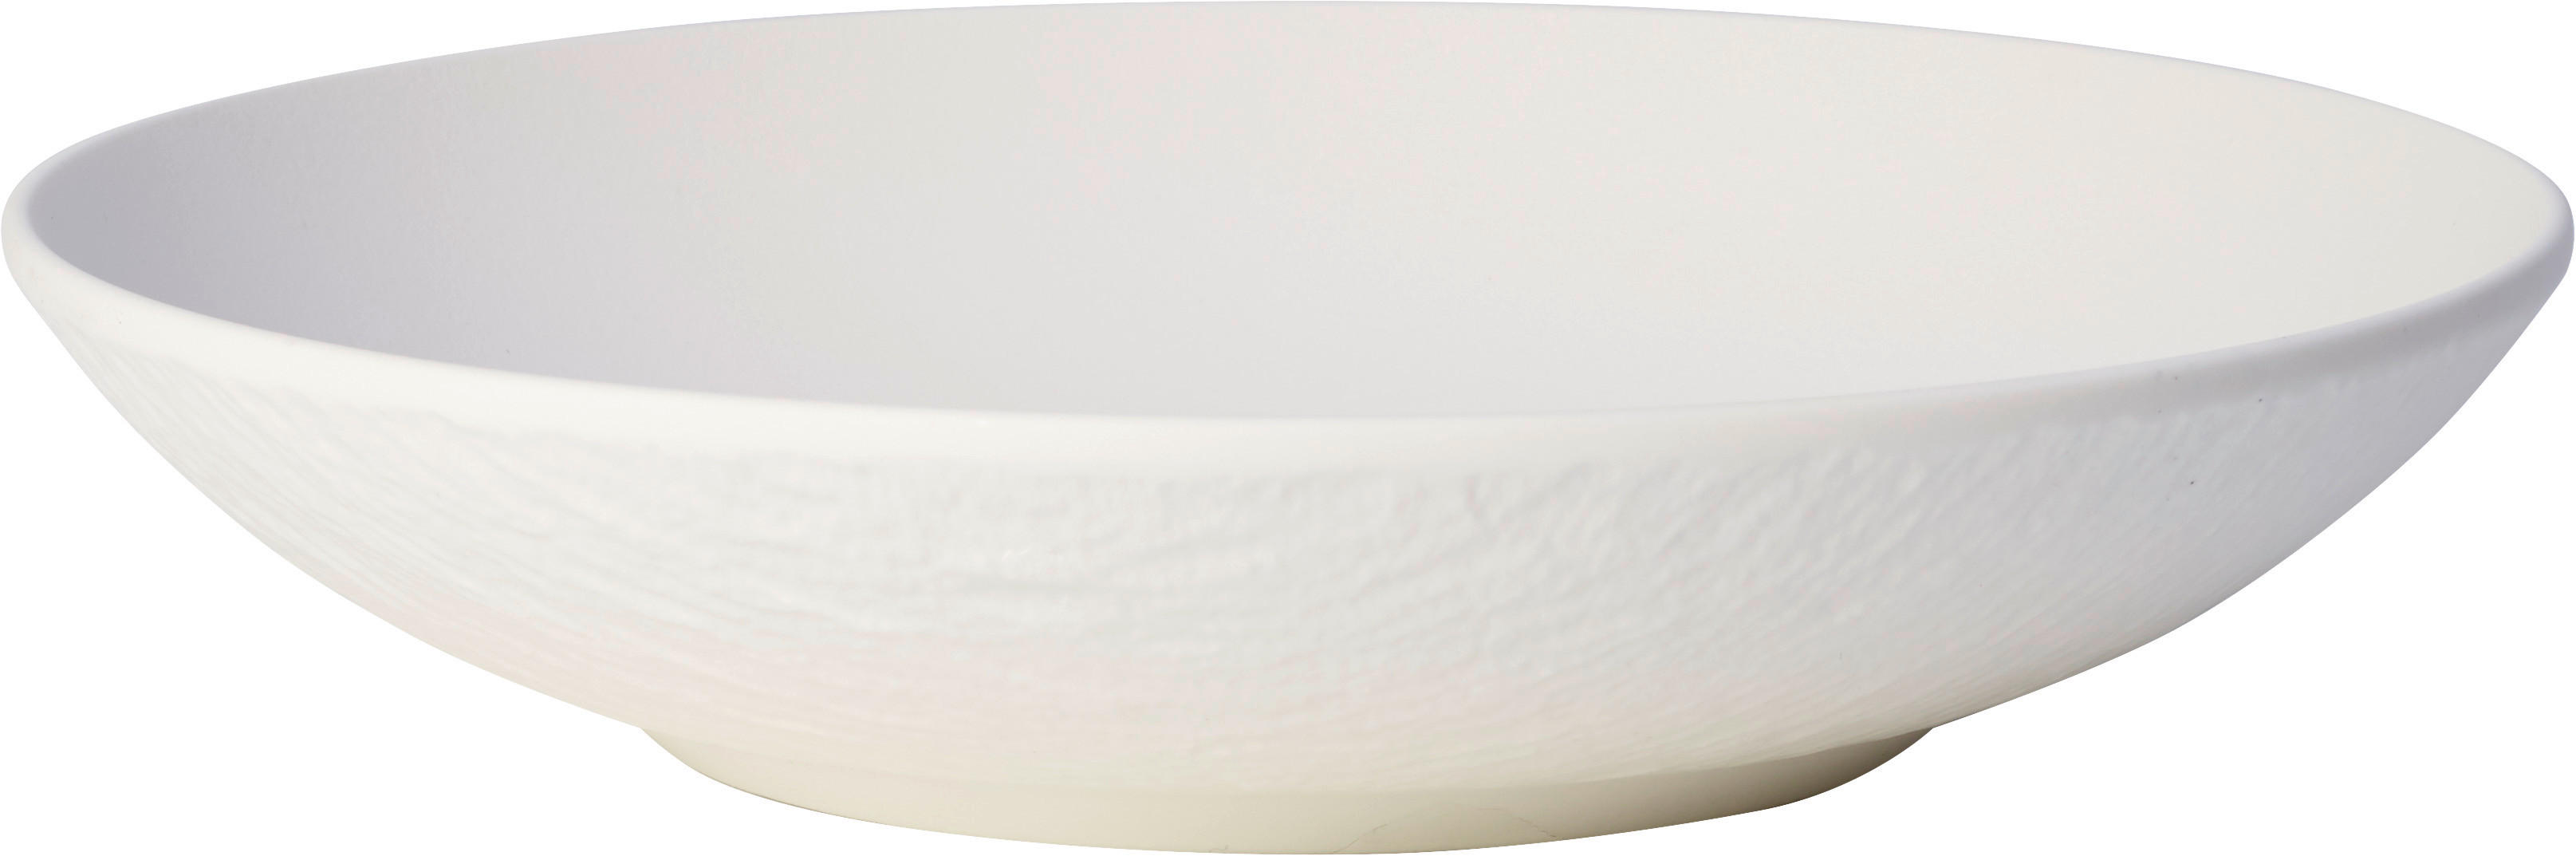 SCHALE Manufacture Rock Blanc 24 cm   - Weiß, Design, Keramik (24cm) - Villeroy & Boch